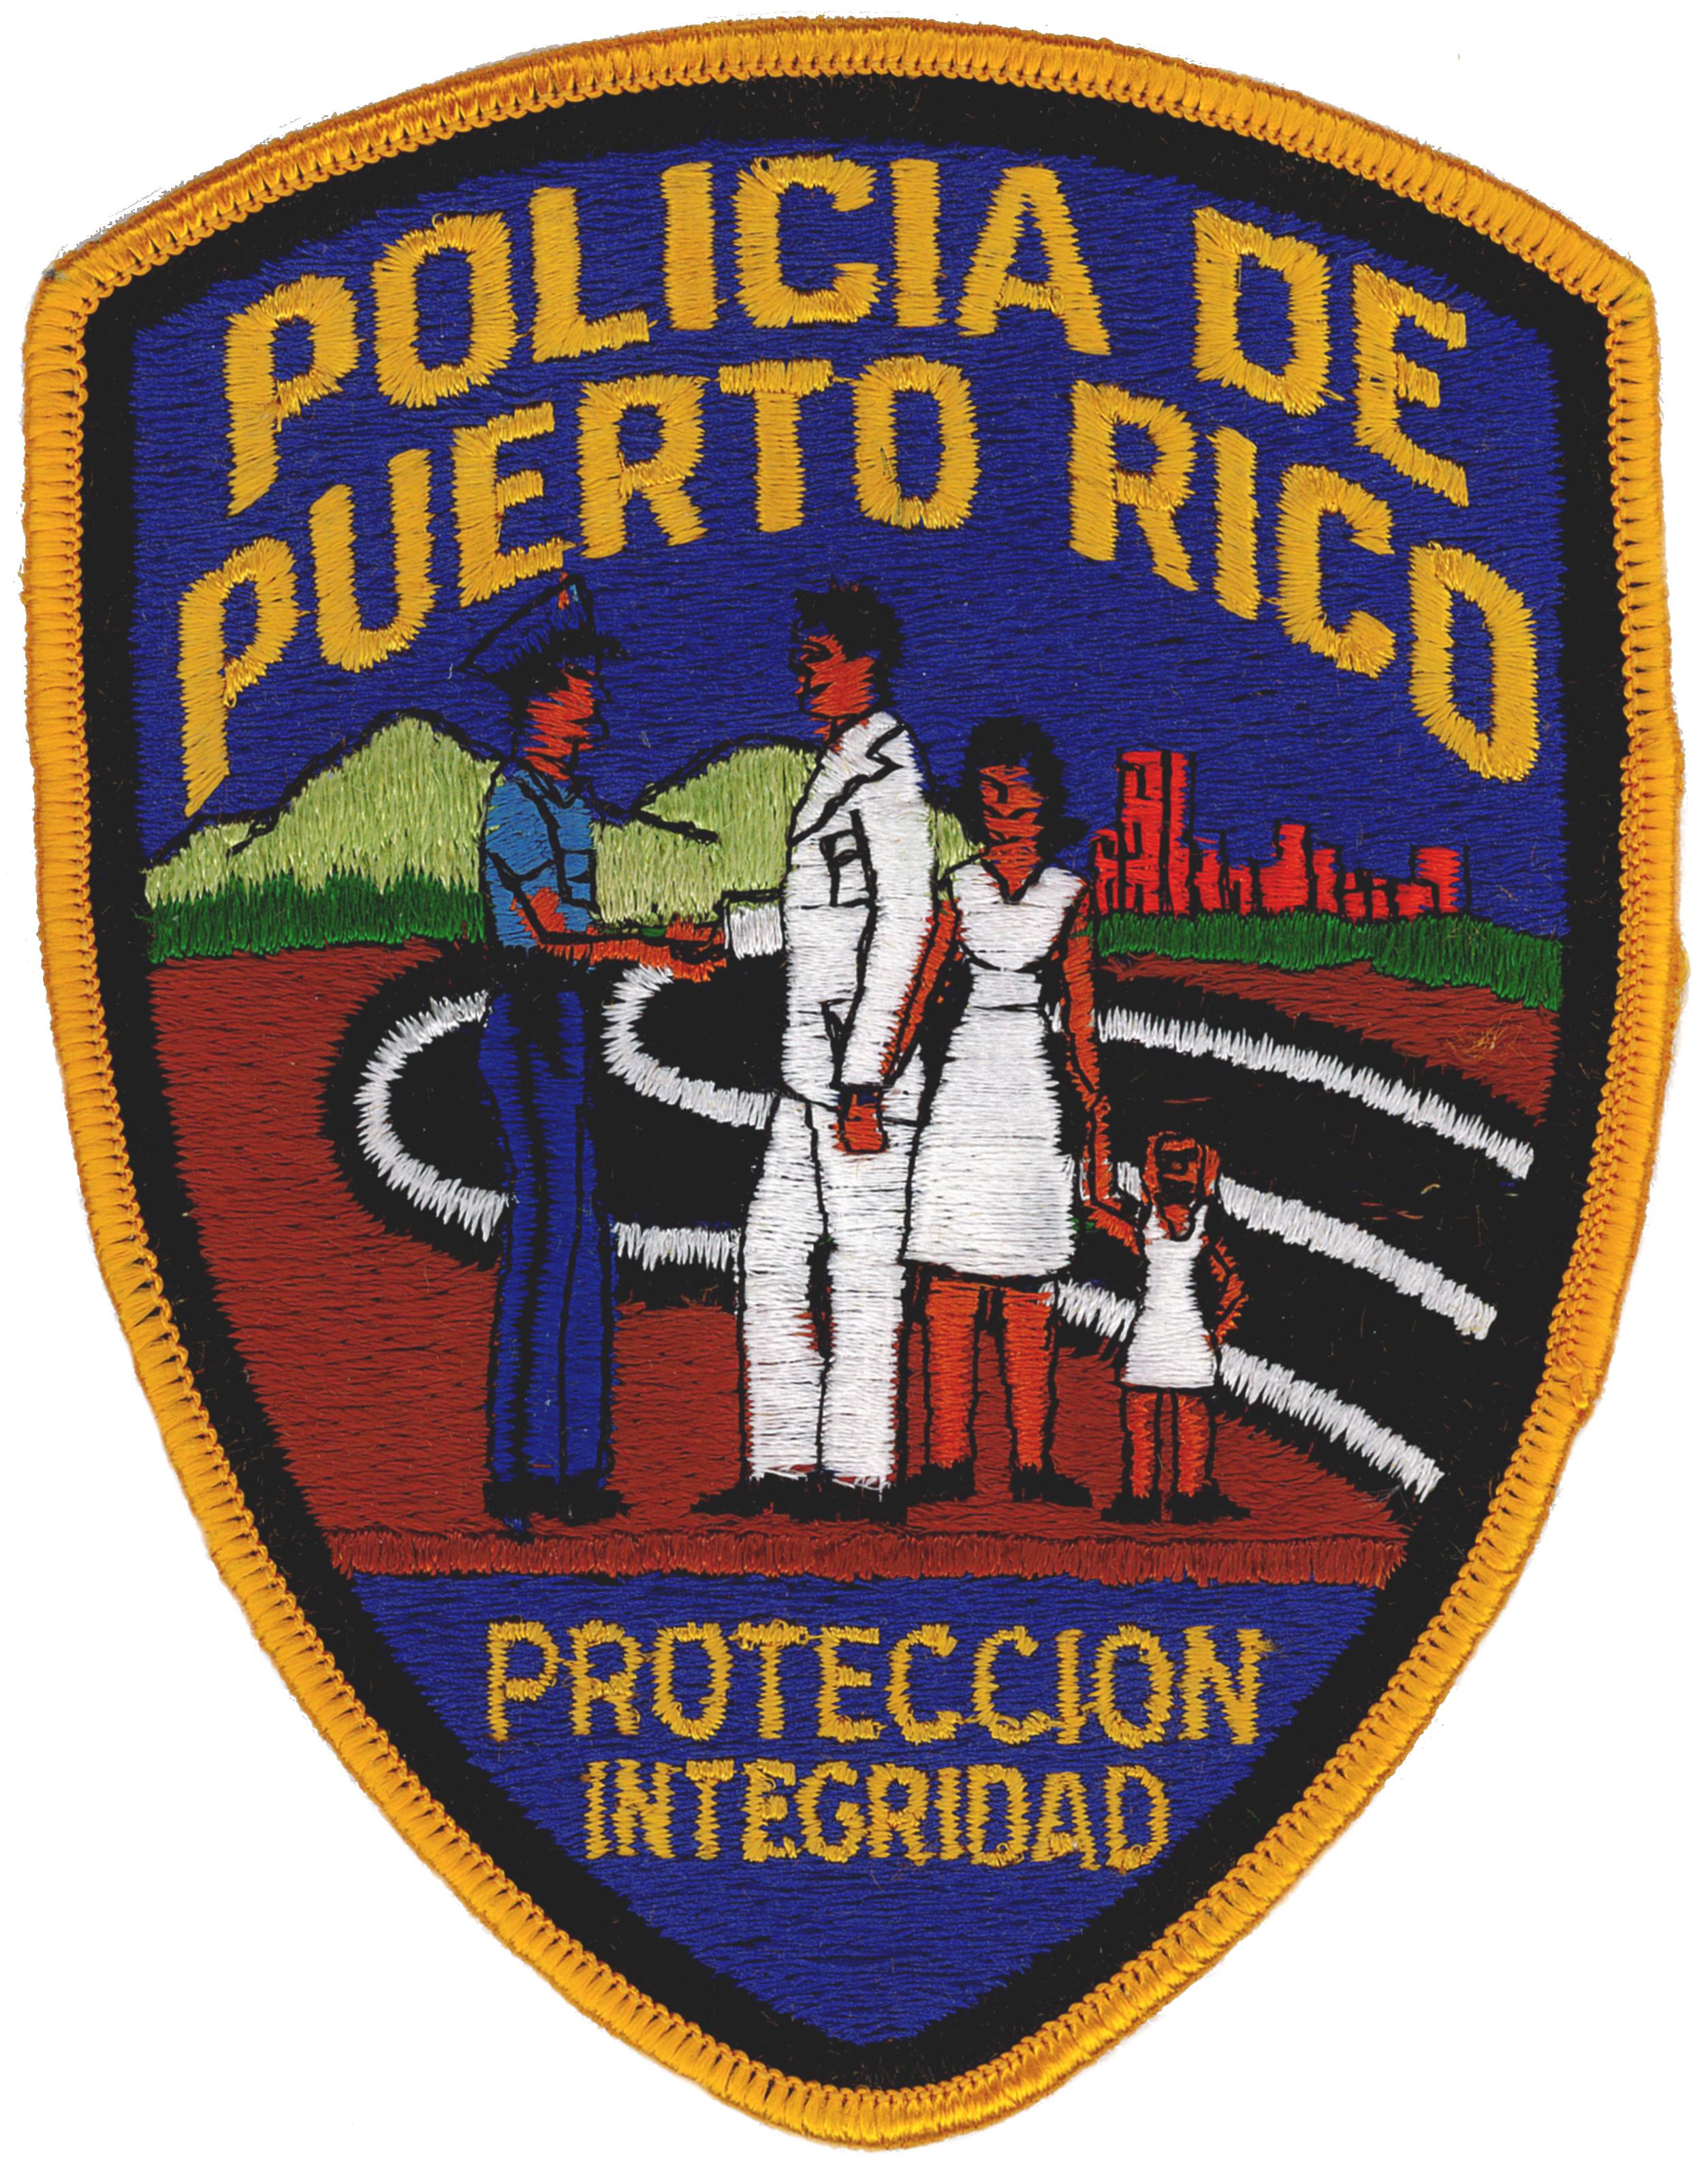 Policia De Puerto Rico